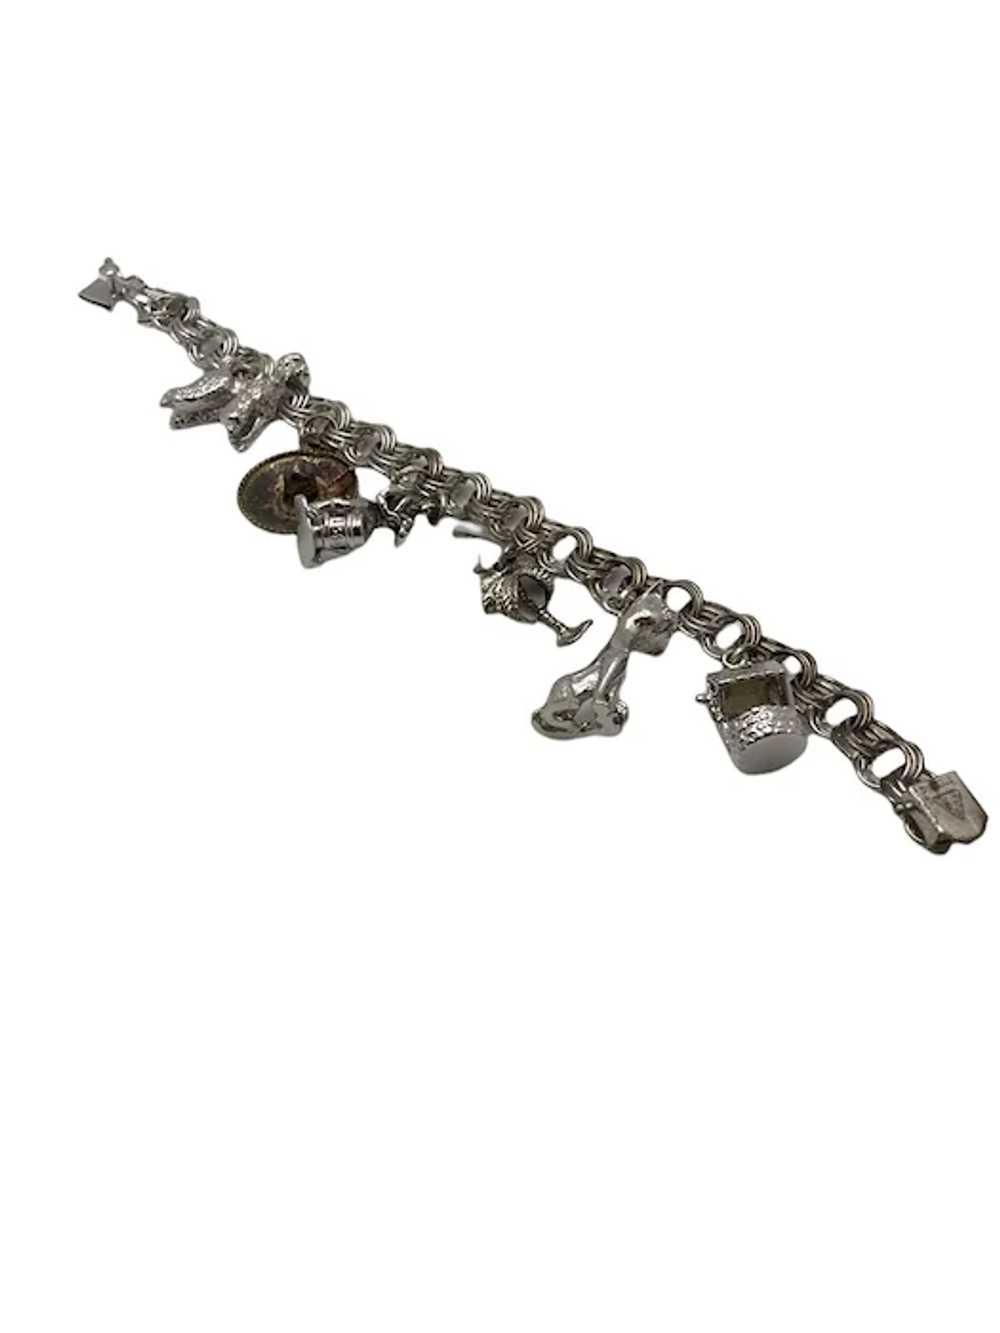 Vintage Sterling Silver Link Charm Bracelet - image 6